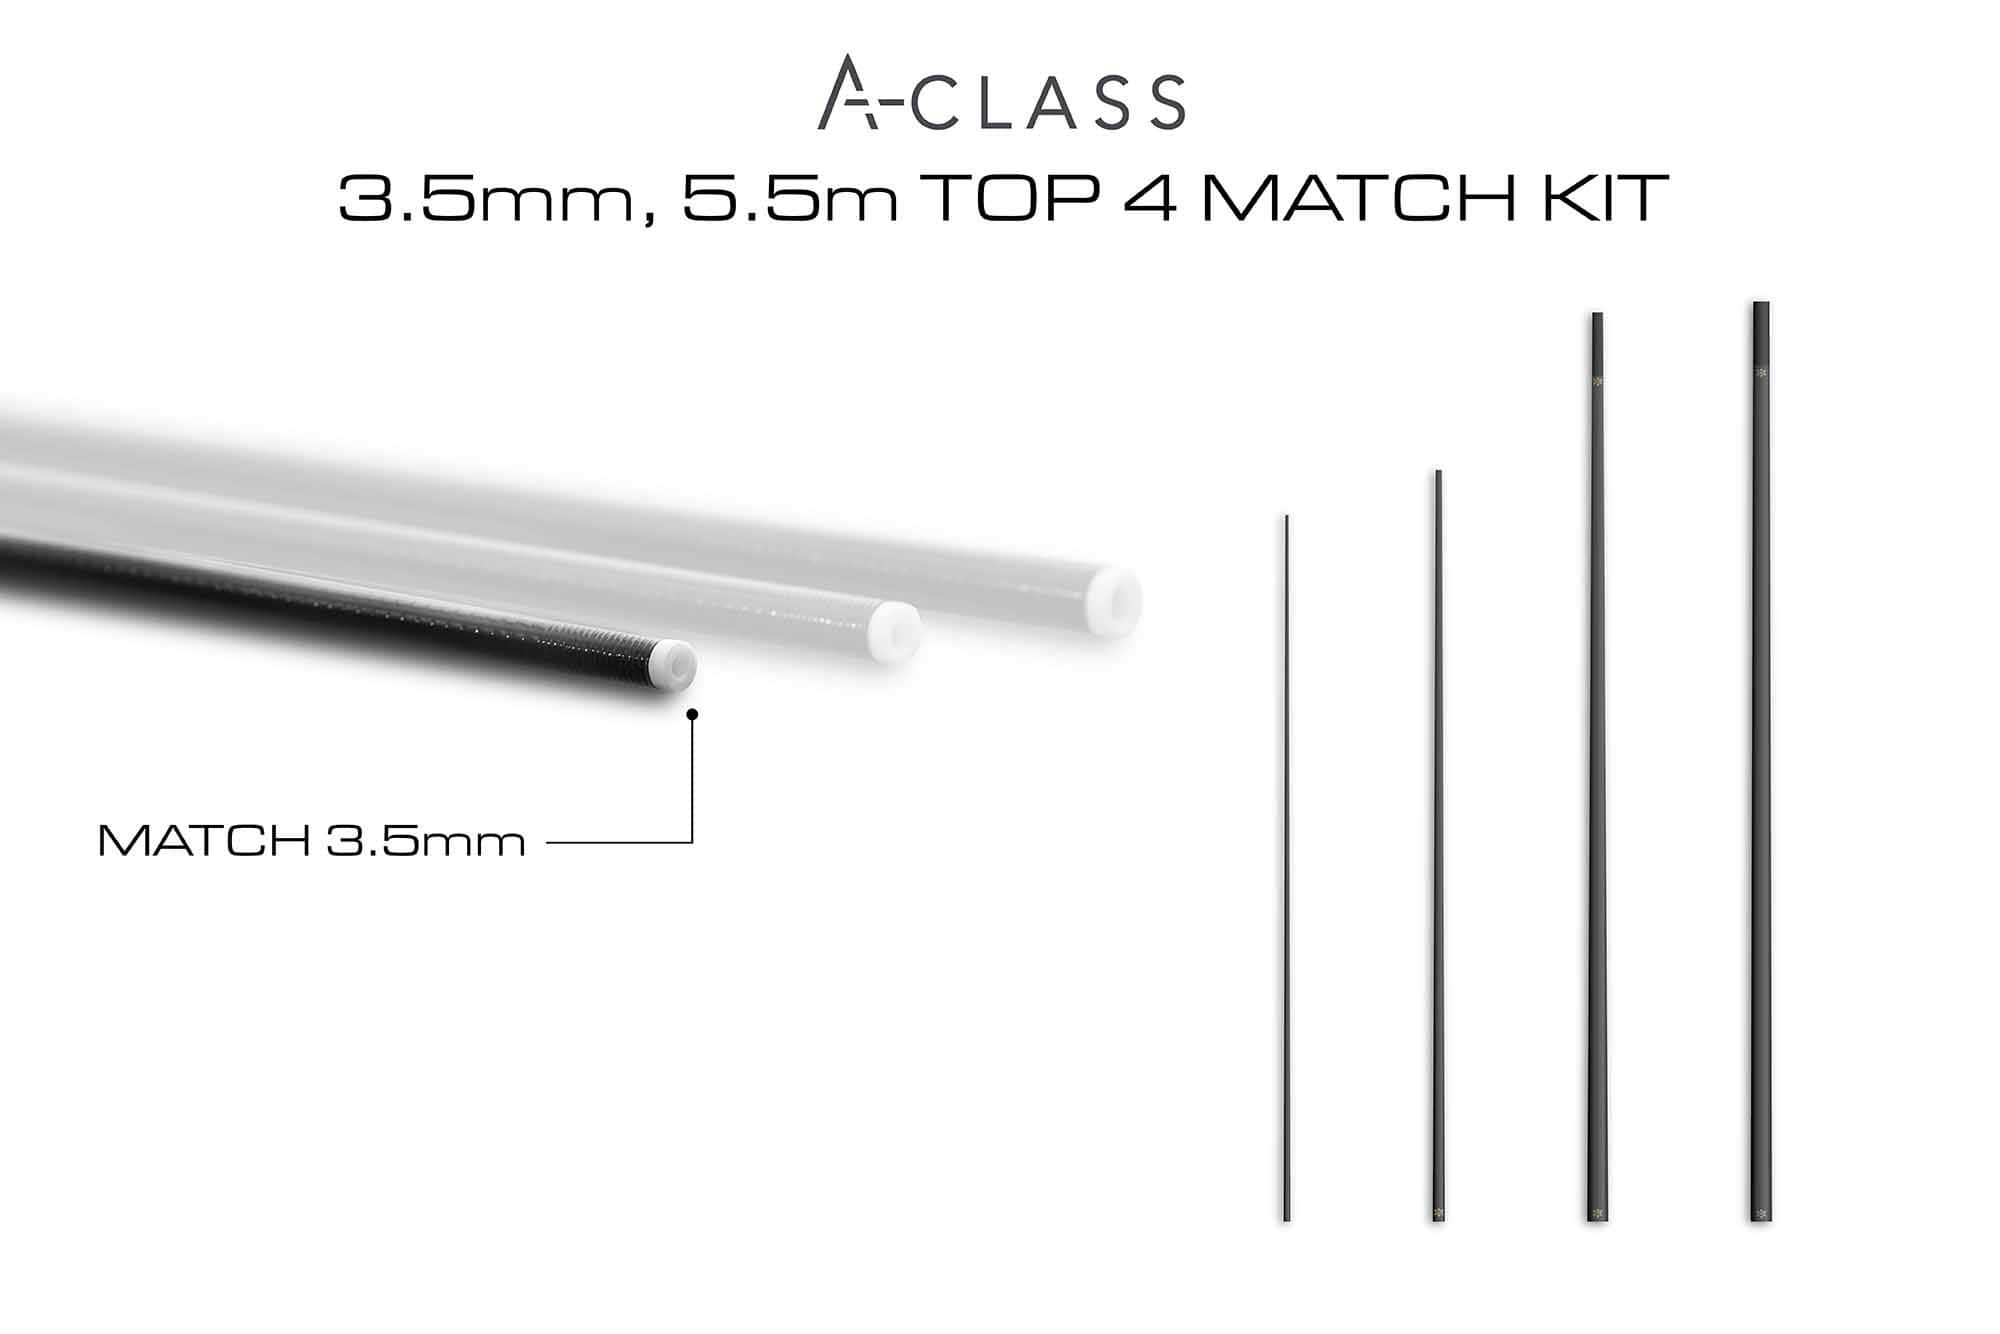 guru a-class match top 4 kit 3.5mm 5.5m